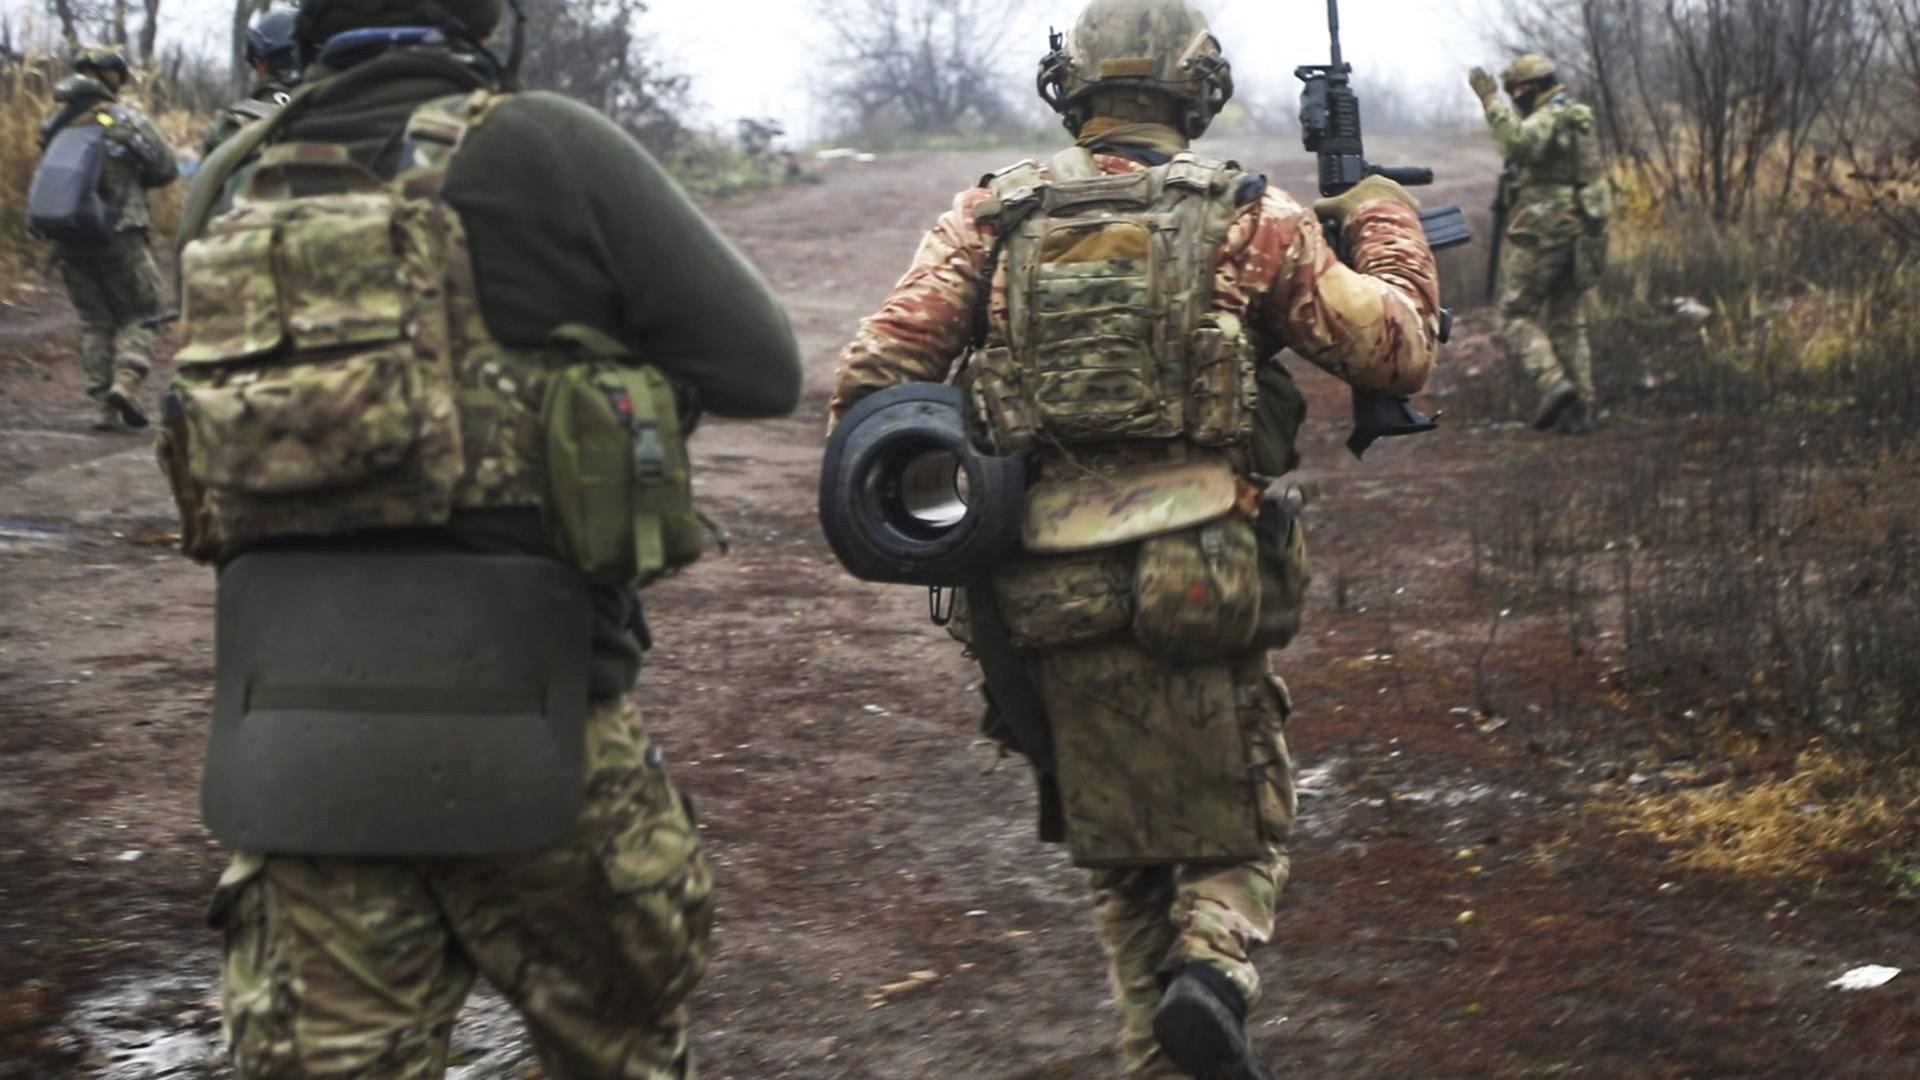 Russland beschuldigte die ukrainische Seite, mehrere russische Soldaten hingerichtet zu haben